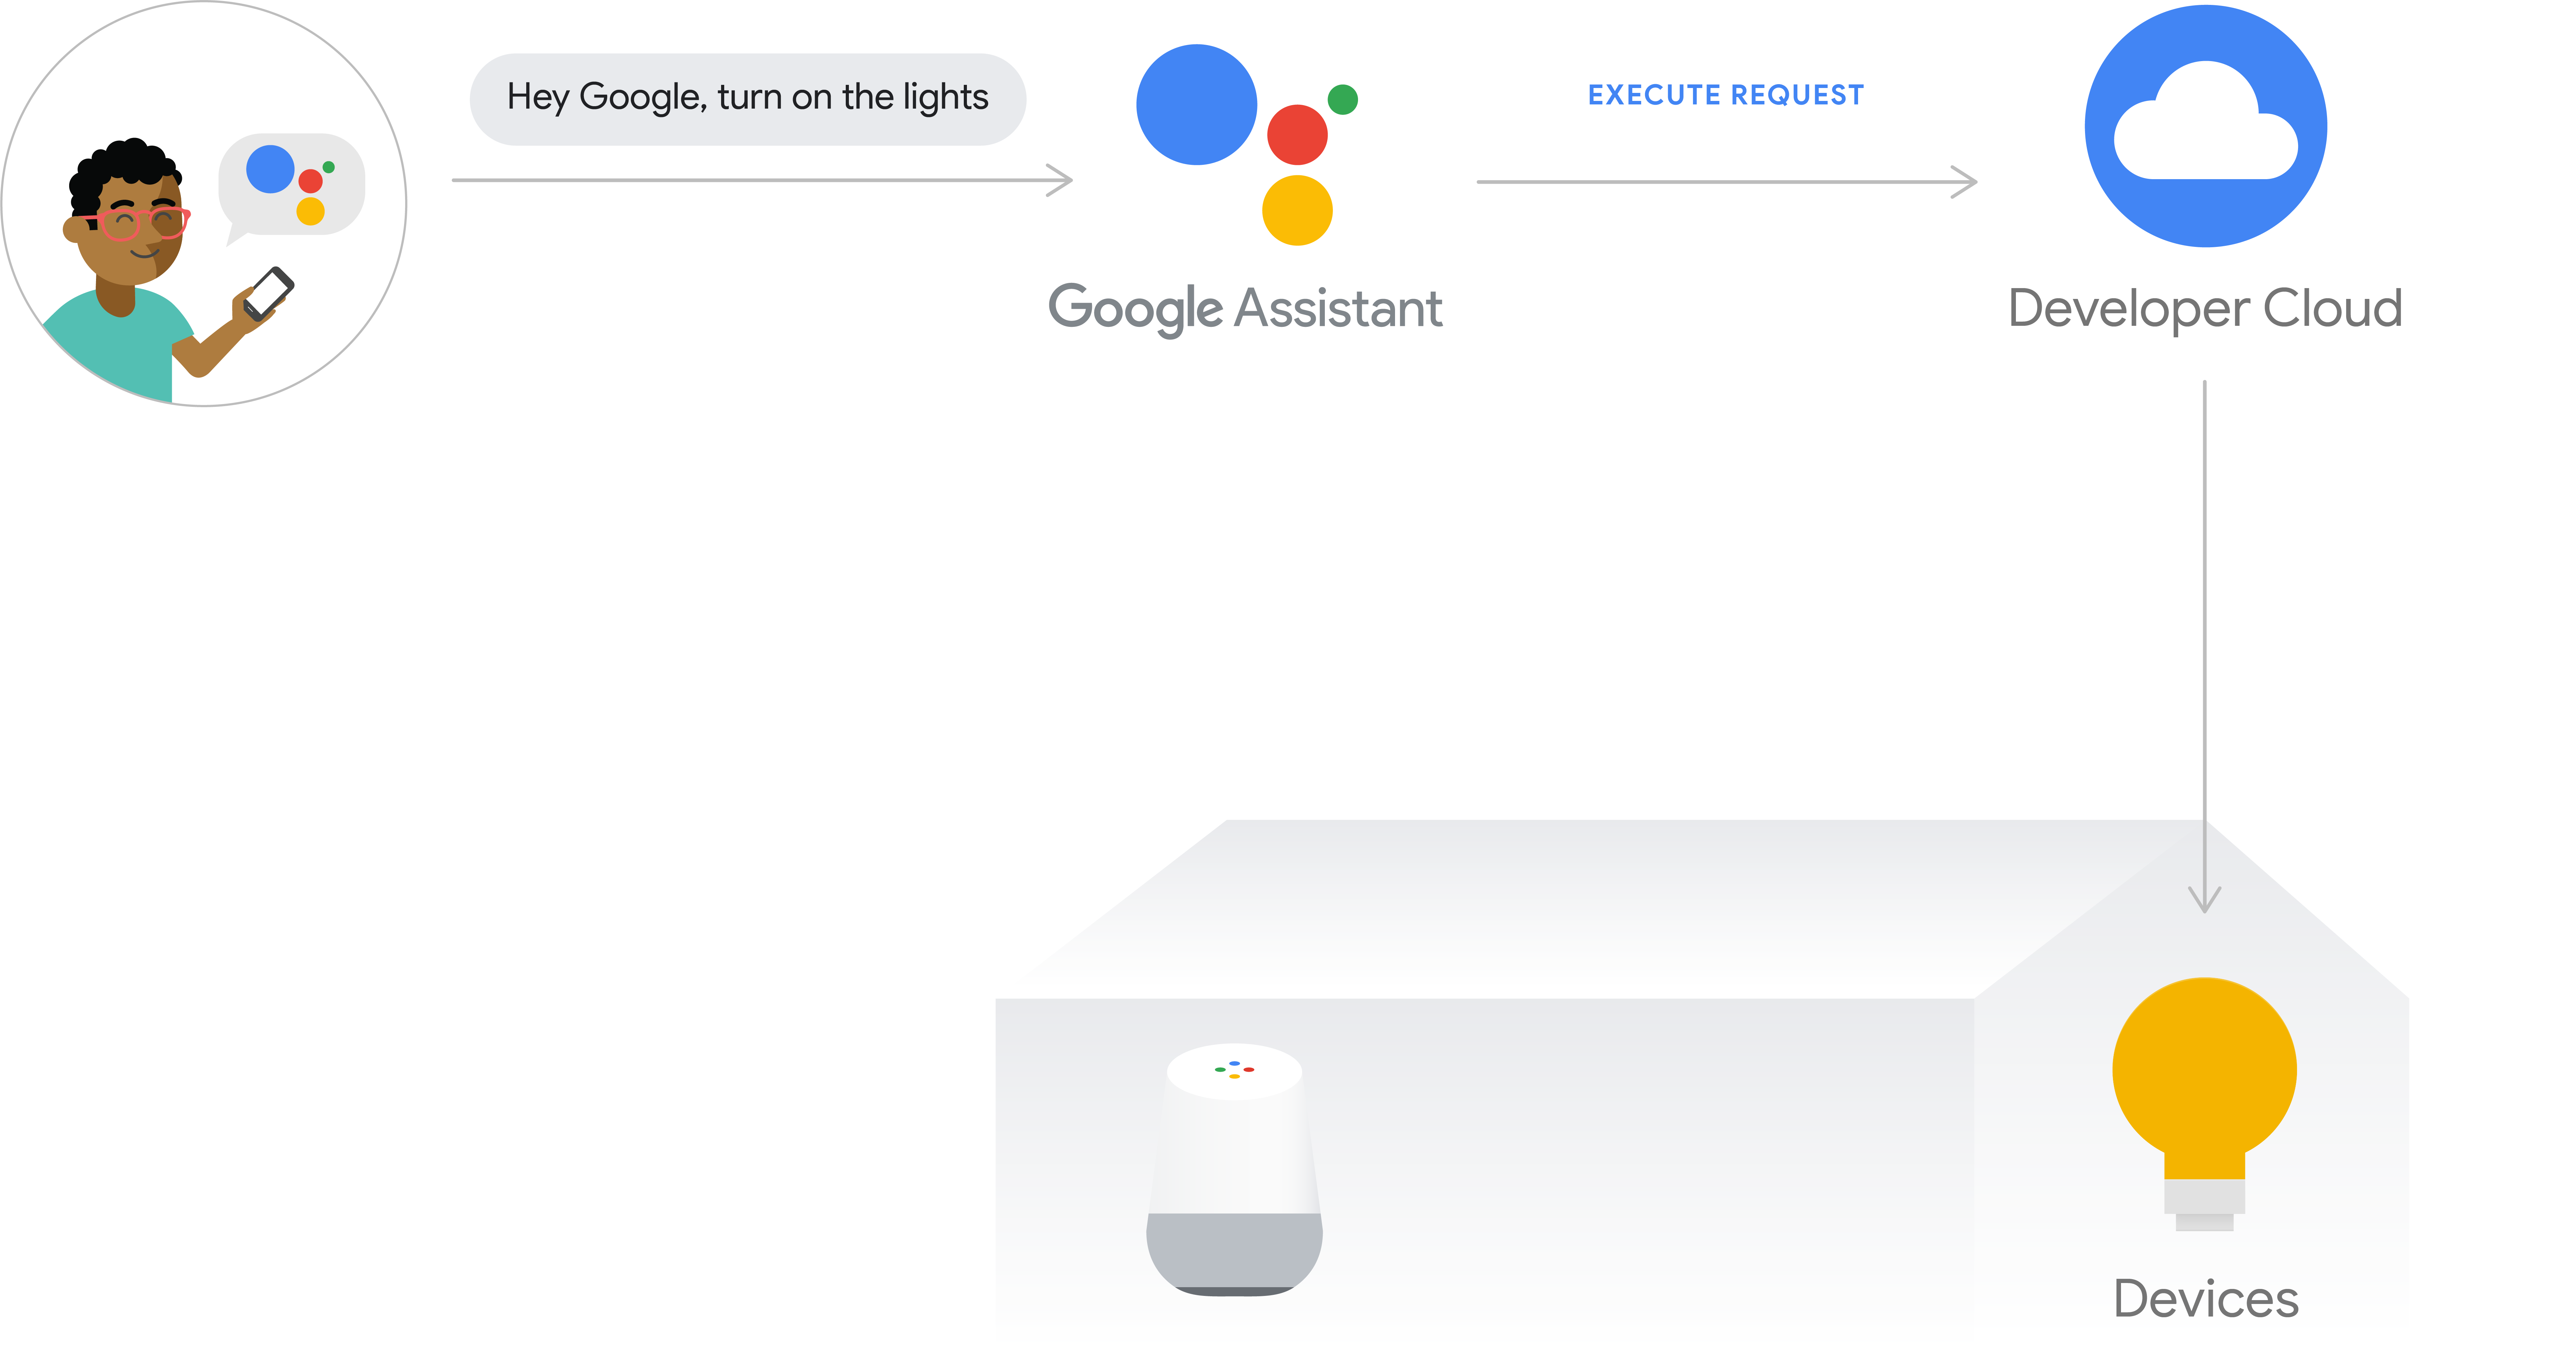 รูปนี้แสดงโฟลว์การดำเนินการสำหรับการดำเนินการบนระบบคลาวด์ เส้นทางการดำเนินการบันทึกความตั้งใจของผู้ใช้จากโทรศัพท์ด้วย Google Assistant จากนั้น Google Cloud จะประมวลผล Intent ของผู้ใช้ จากนั้นจะส่งคำขอไปยังระบบคลาวด์ของนักพัฒนาซอฟต์แวร์ จากนั้นจะส่งคำสั่งไปยังฮับอุปกรณ์หรือส่งคำสั่งไปยังอุปกรณ์โดยตรง